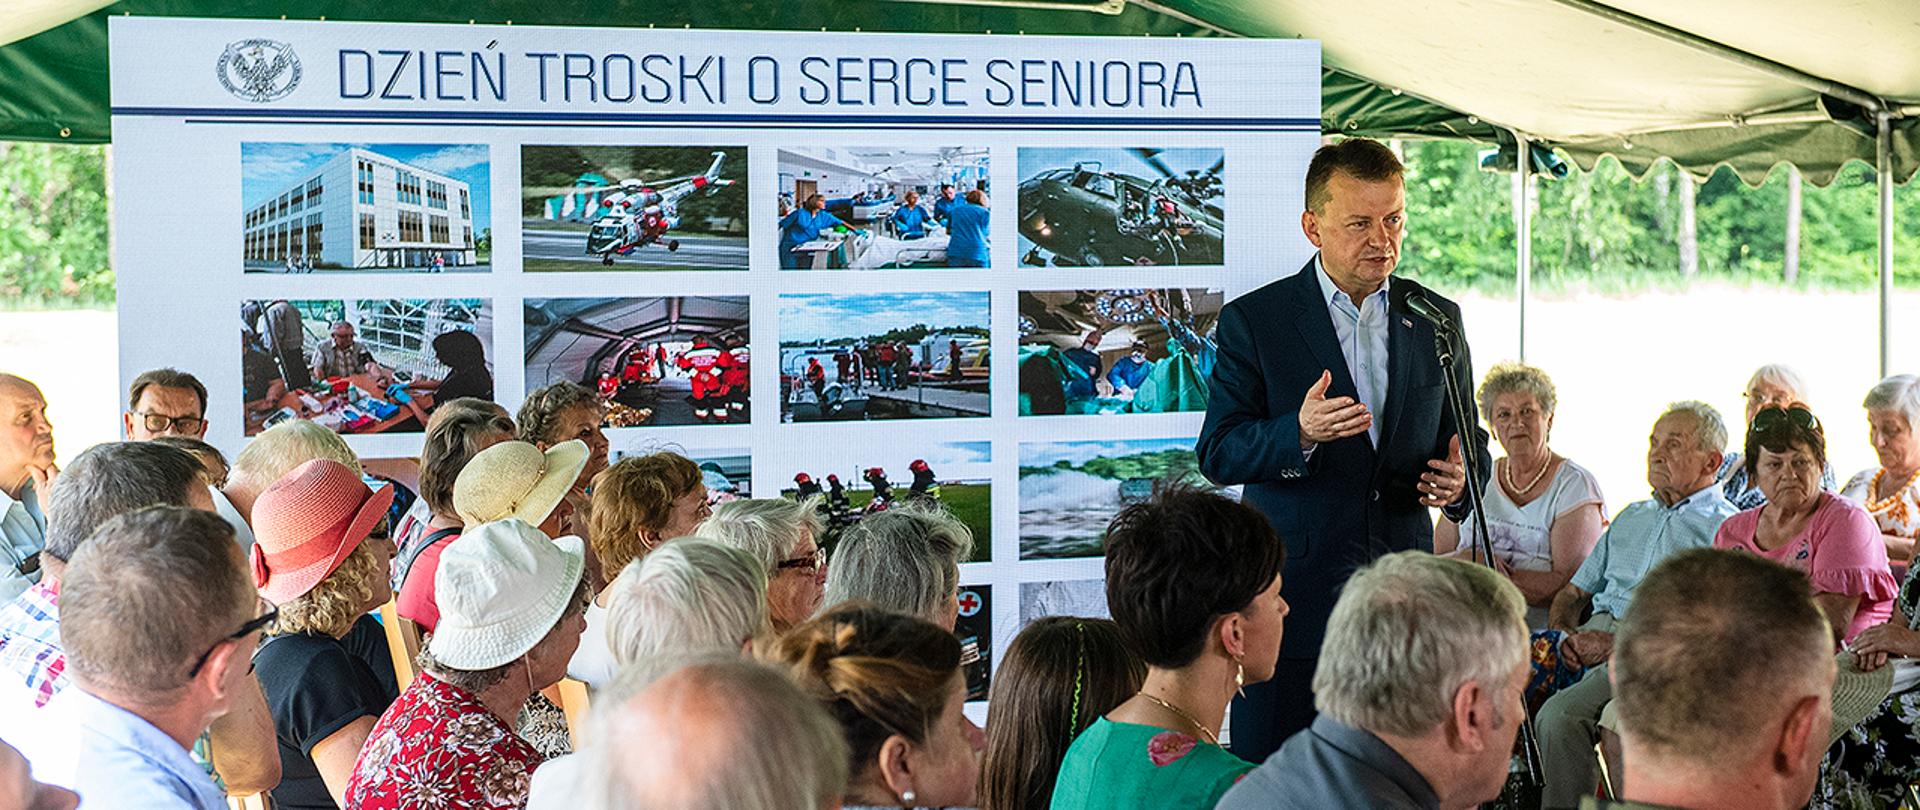 W piątek, 7 czerwca, w Białobrzegach Mariusz Błaszczak, minister obrony narodowej uczestniczył w spotkaniu pod hasłem „Dzień troski o serce seniora”, organizowanym przez Wojskowy Instytut Medyczny.